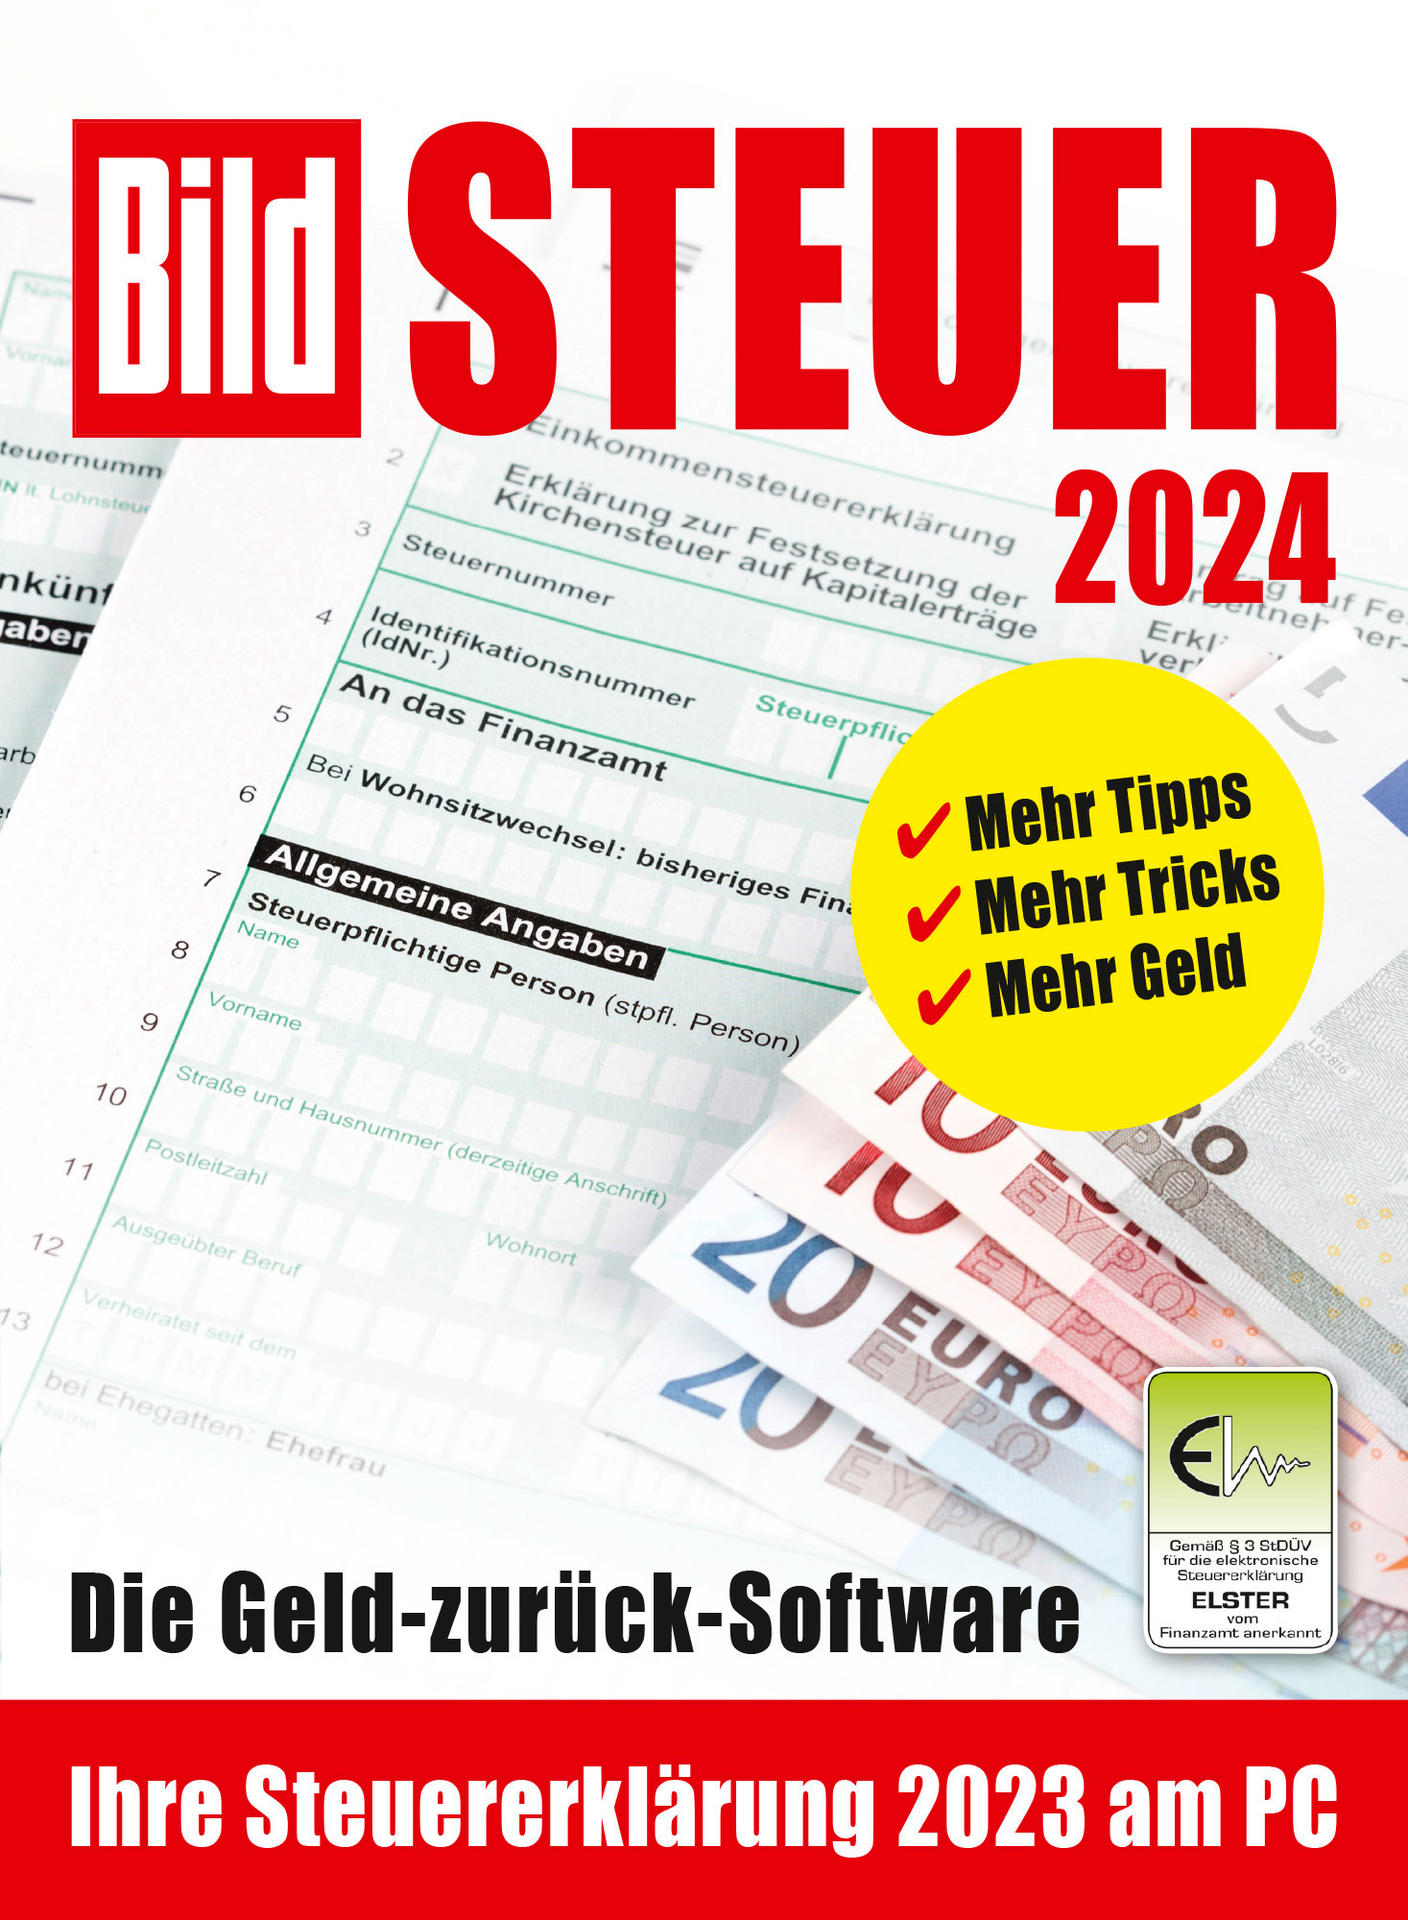 BildSteuer (für 2023) - Steuerjahr 2024 [PC]